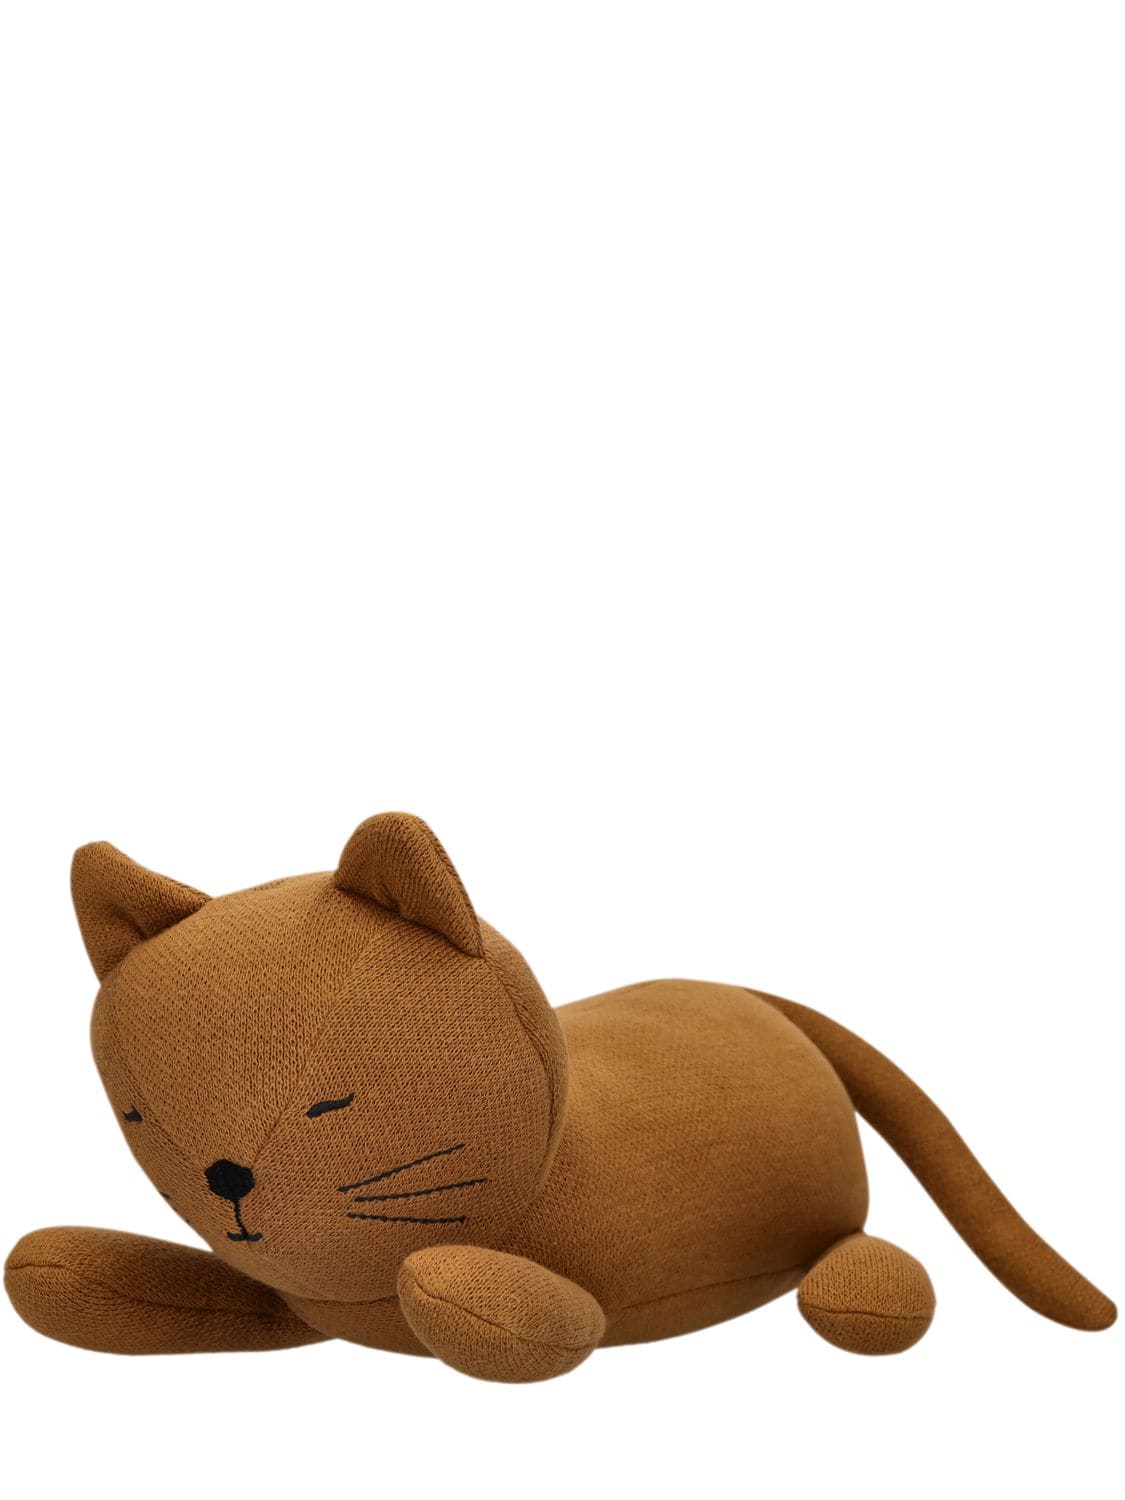 Liewood Kids' Cat Organic Cotton Plush Toy In Brown